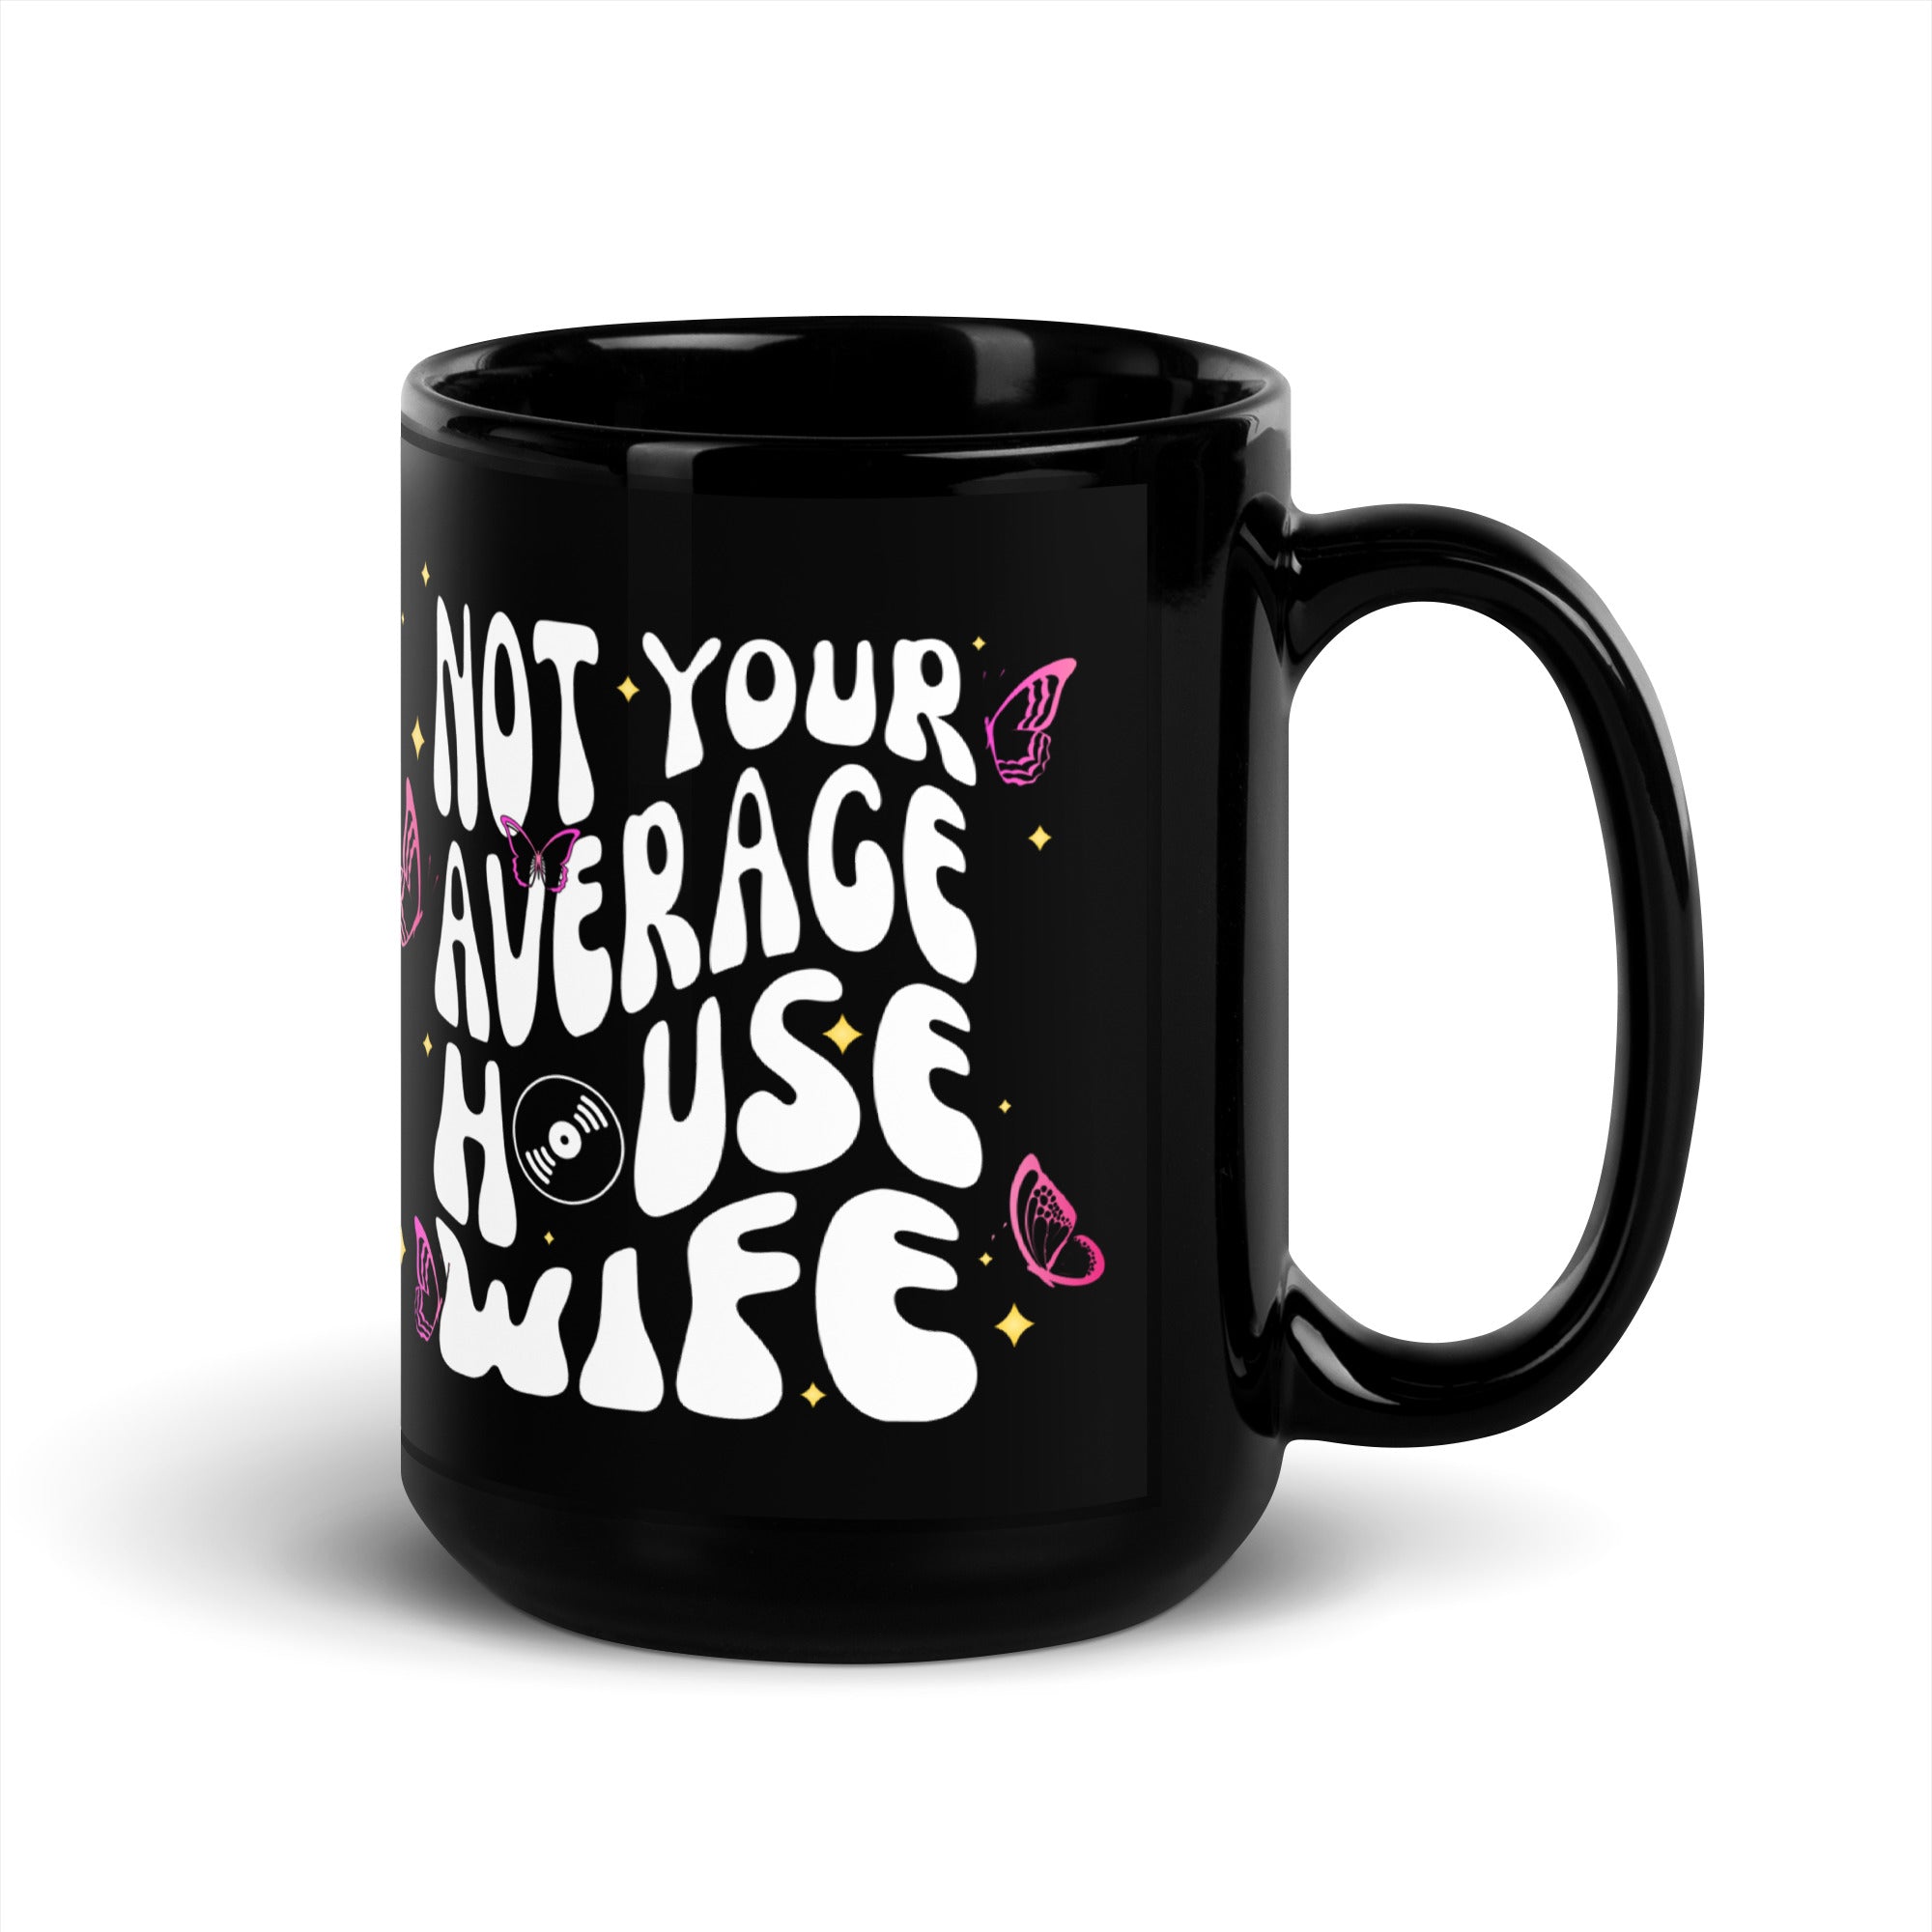 Not Your Average House Wife Mug